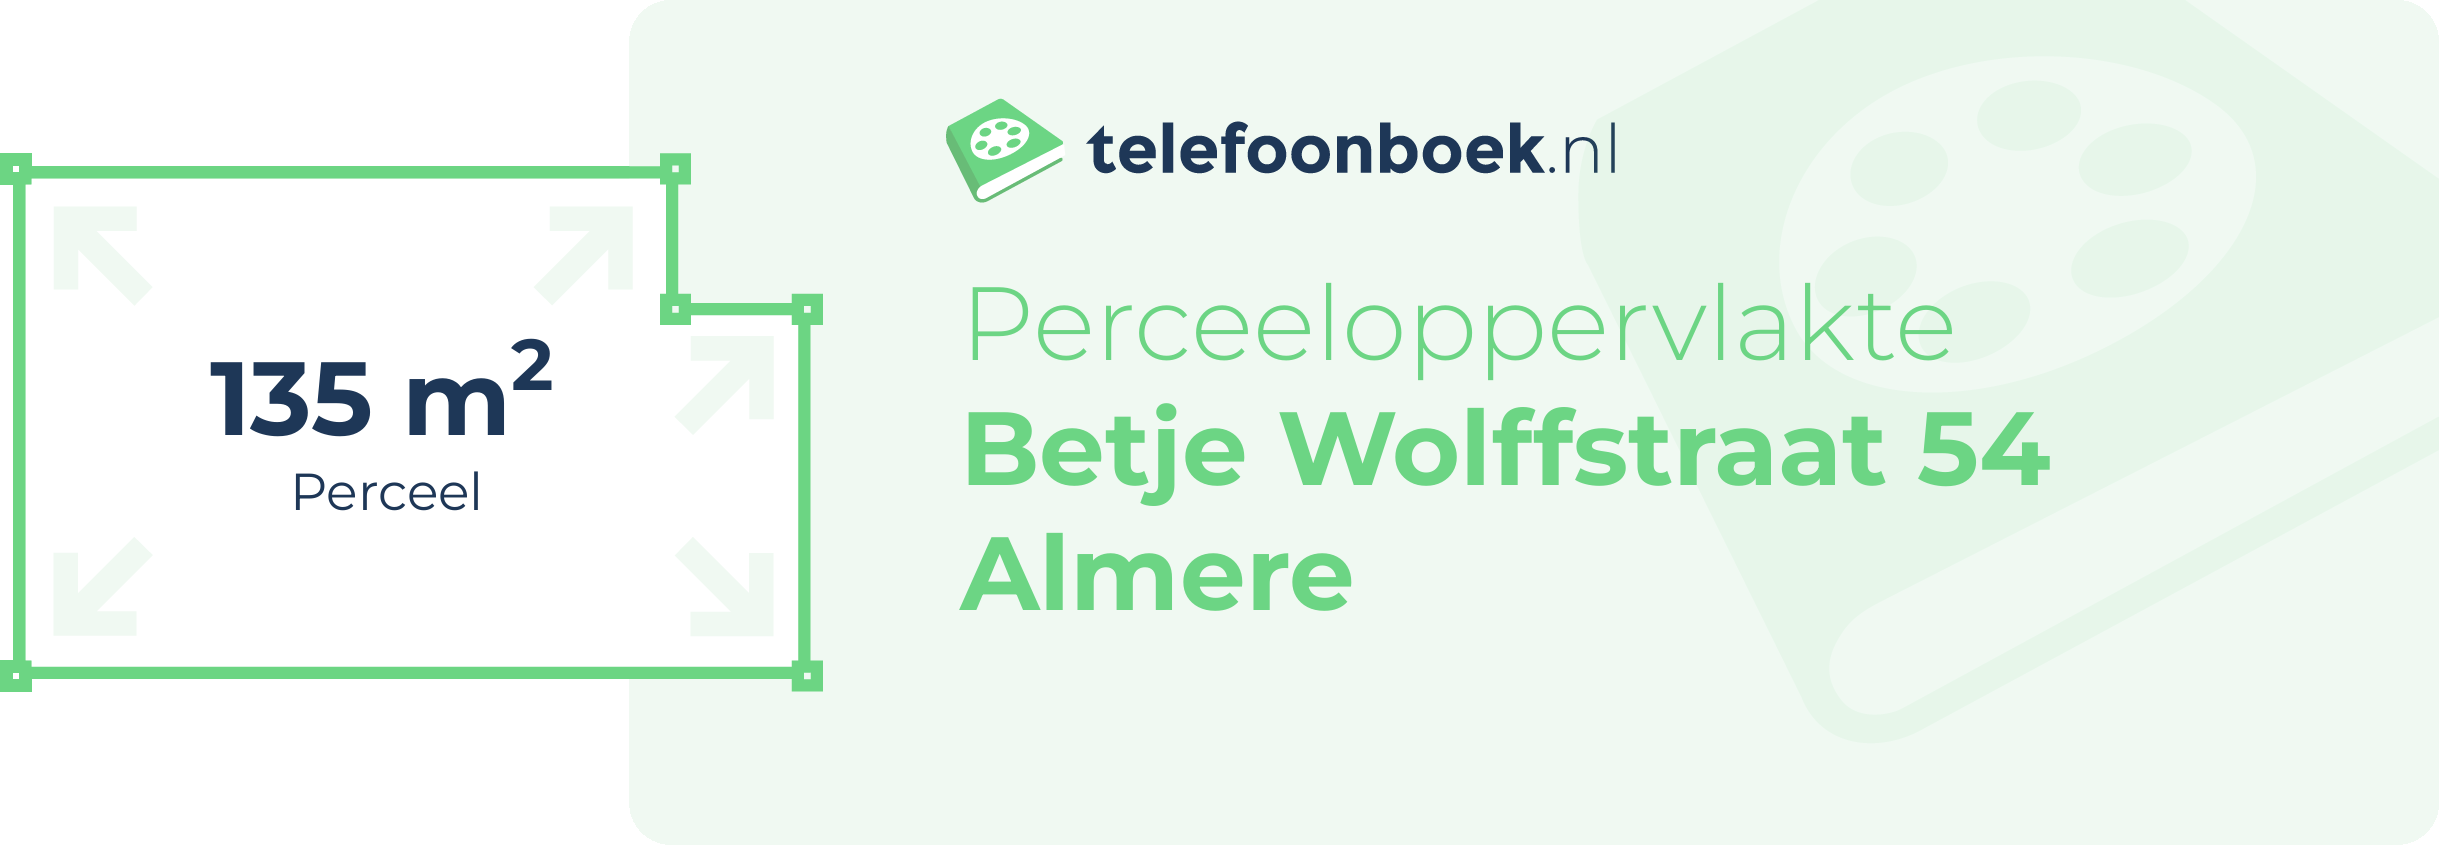 Perceeloppervlakte Betje Wolffstraat 54 Almere